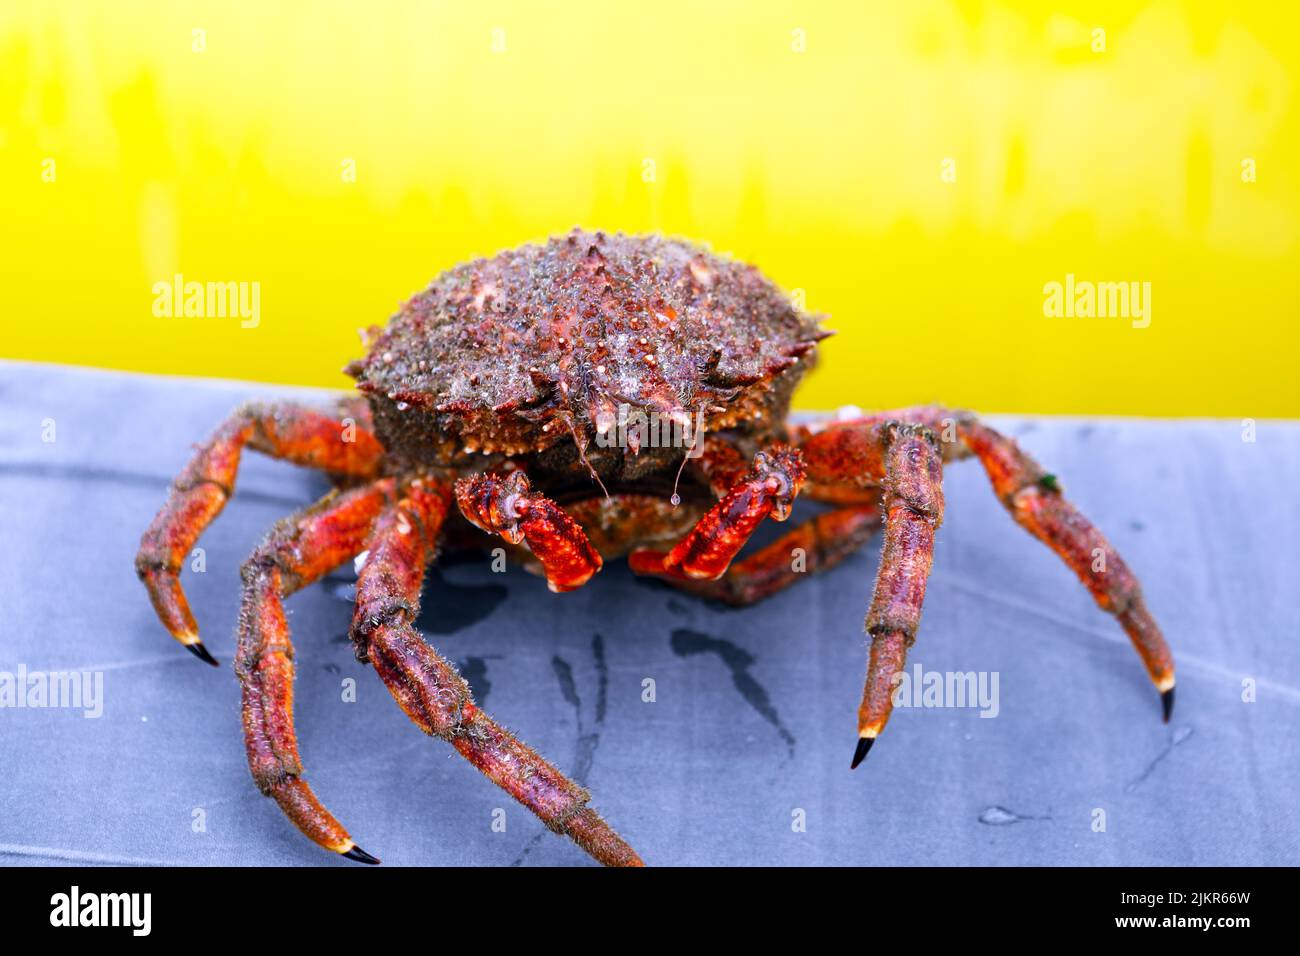 Crabe araignée (Maja brachydactyla) au large de la côte de l'île de Mull dans les Hébrides intérieures d'Écosse Banque D'Images